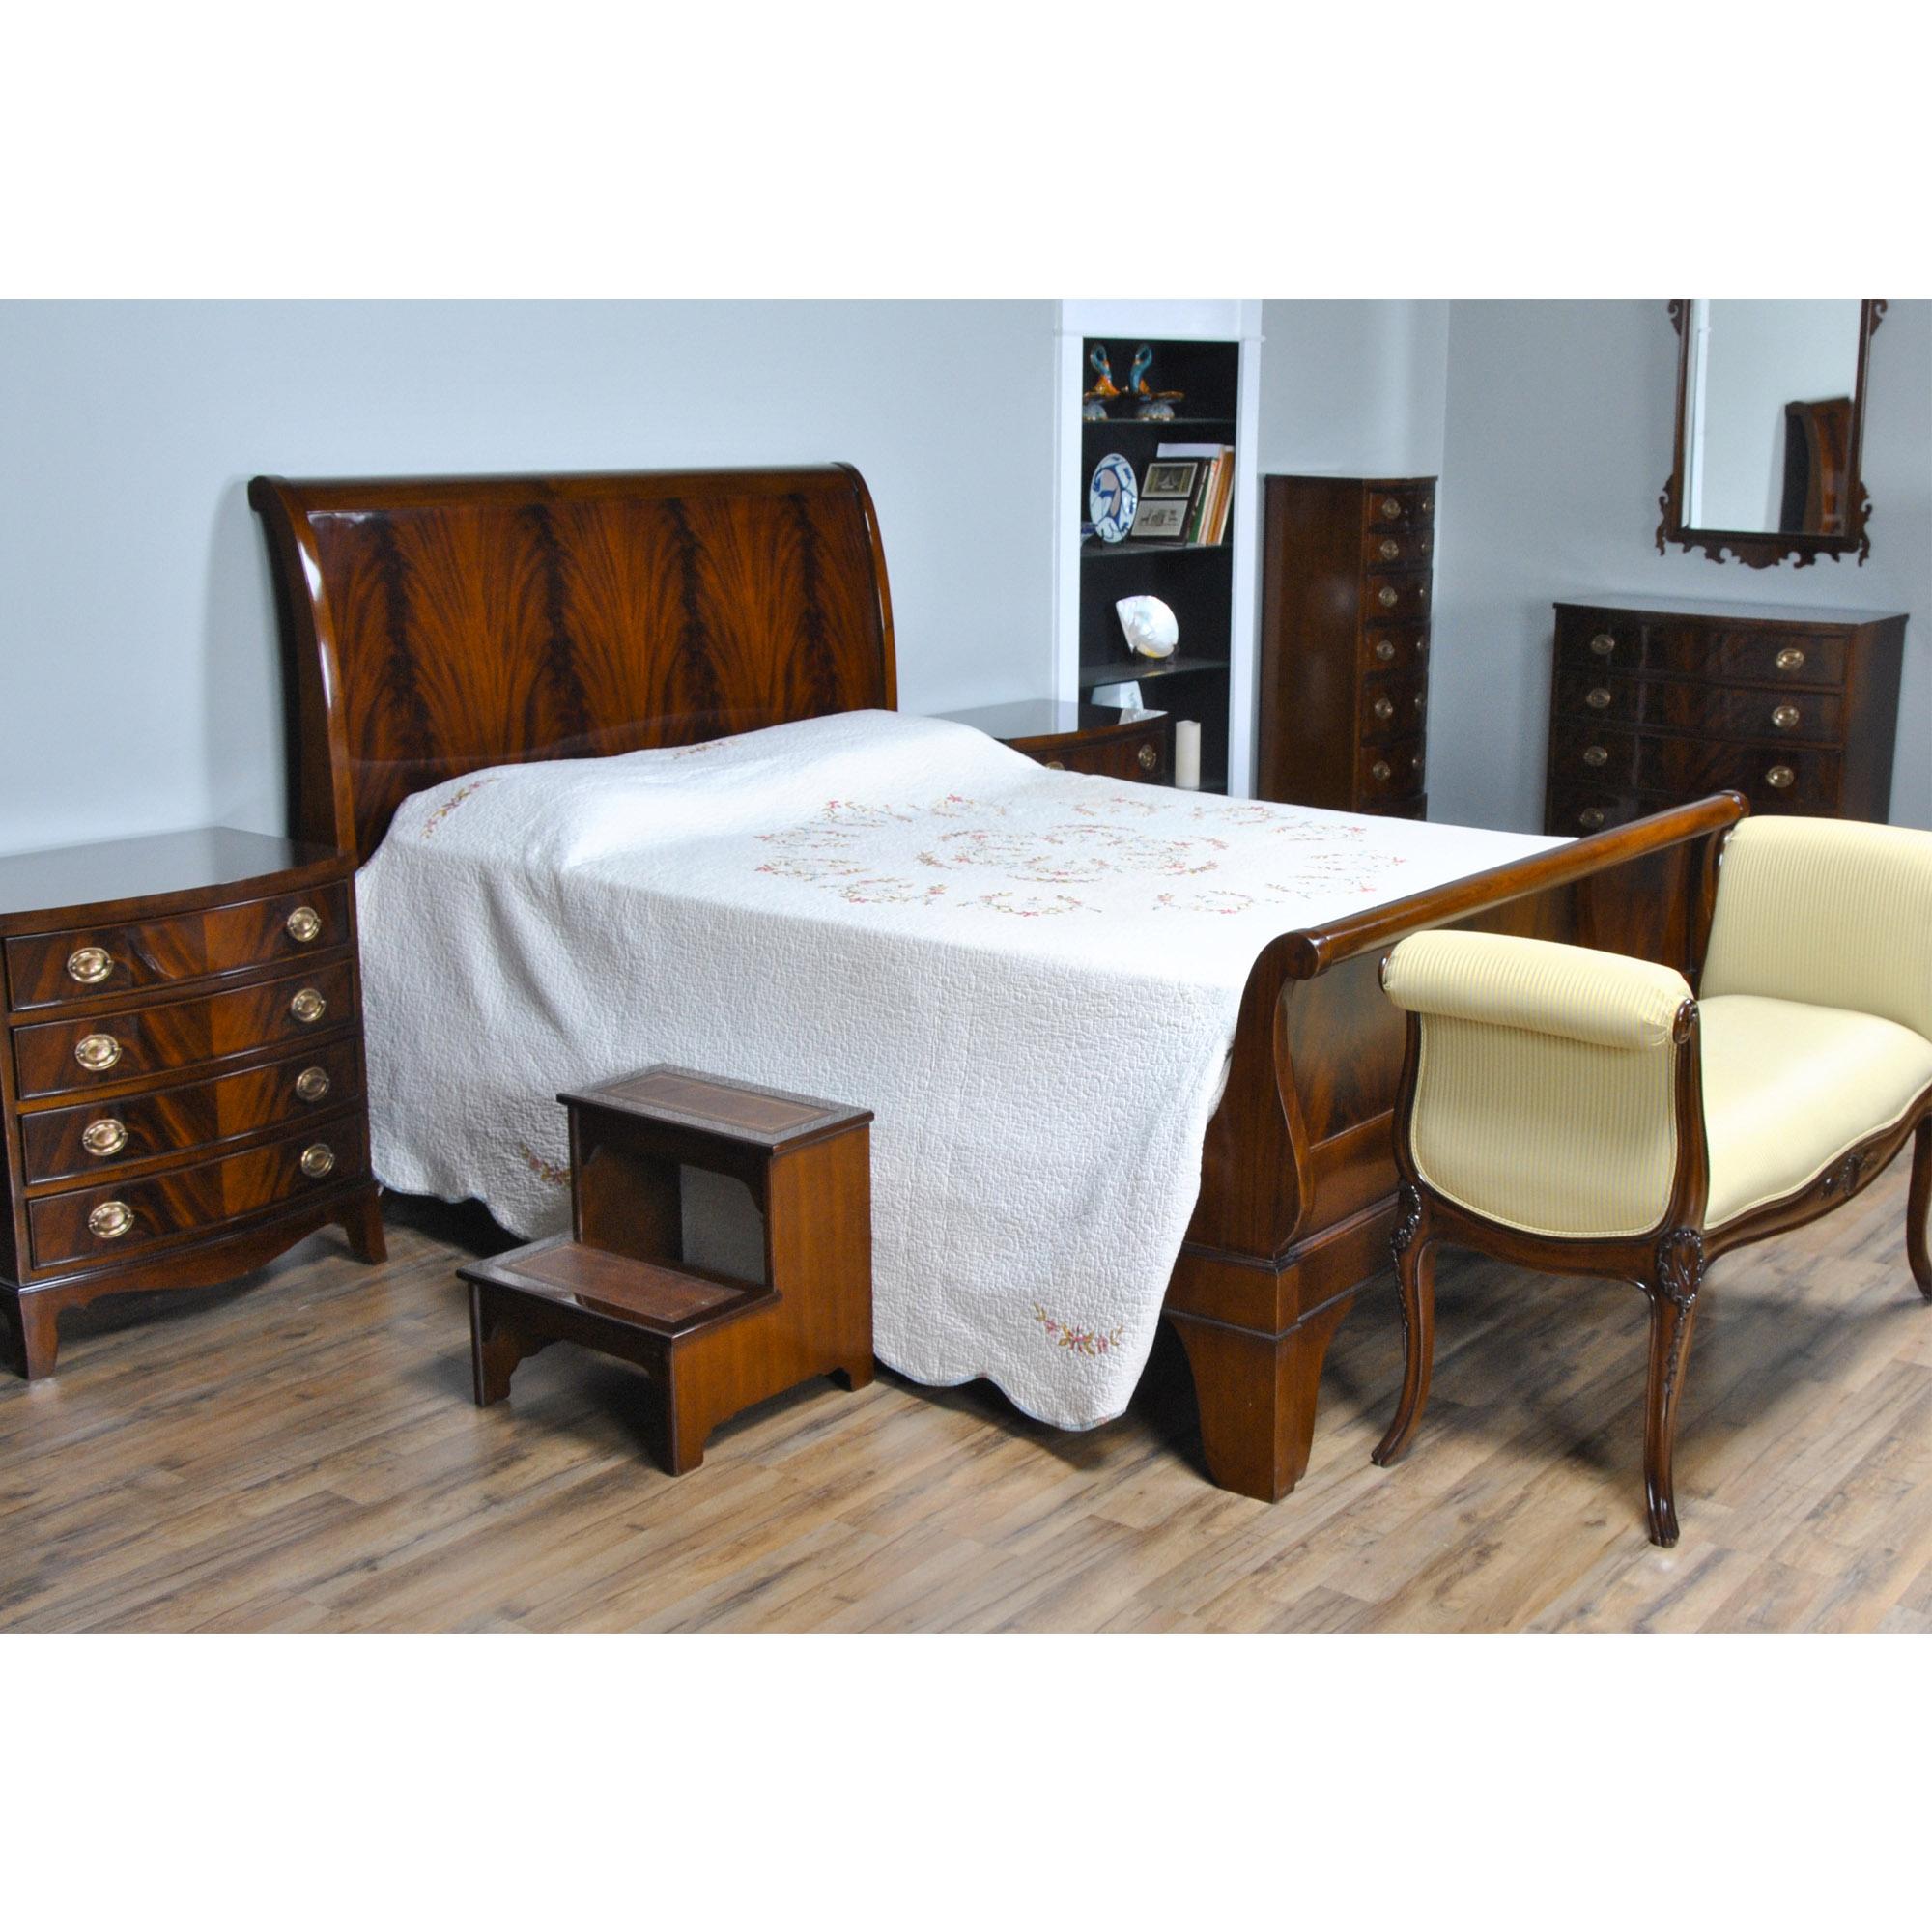 Das hochwertige Mahagoni King Size Sleigh Bed besteht aus einem massiven Mahagoni-Rahmen und furnierten Paneelen von höchster Qualität, die zusammen ein schlichtes und elegantes Design bilden. Dieses auch als Plattformbett bezeichnete Bett wird mit